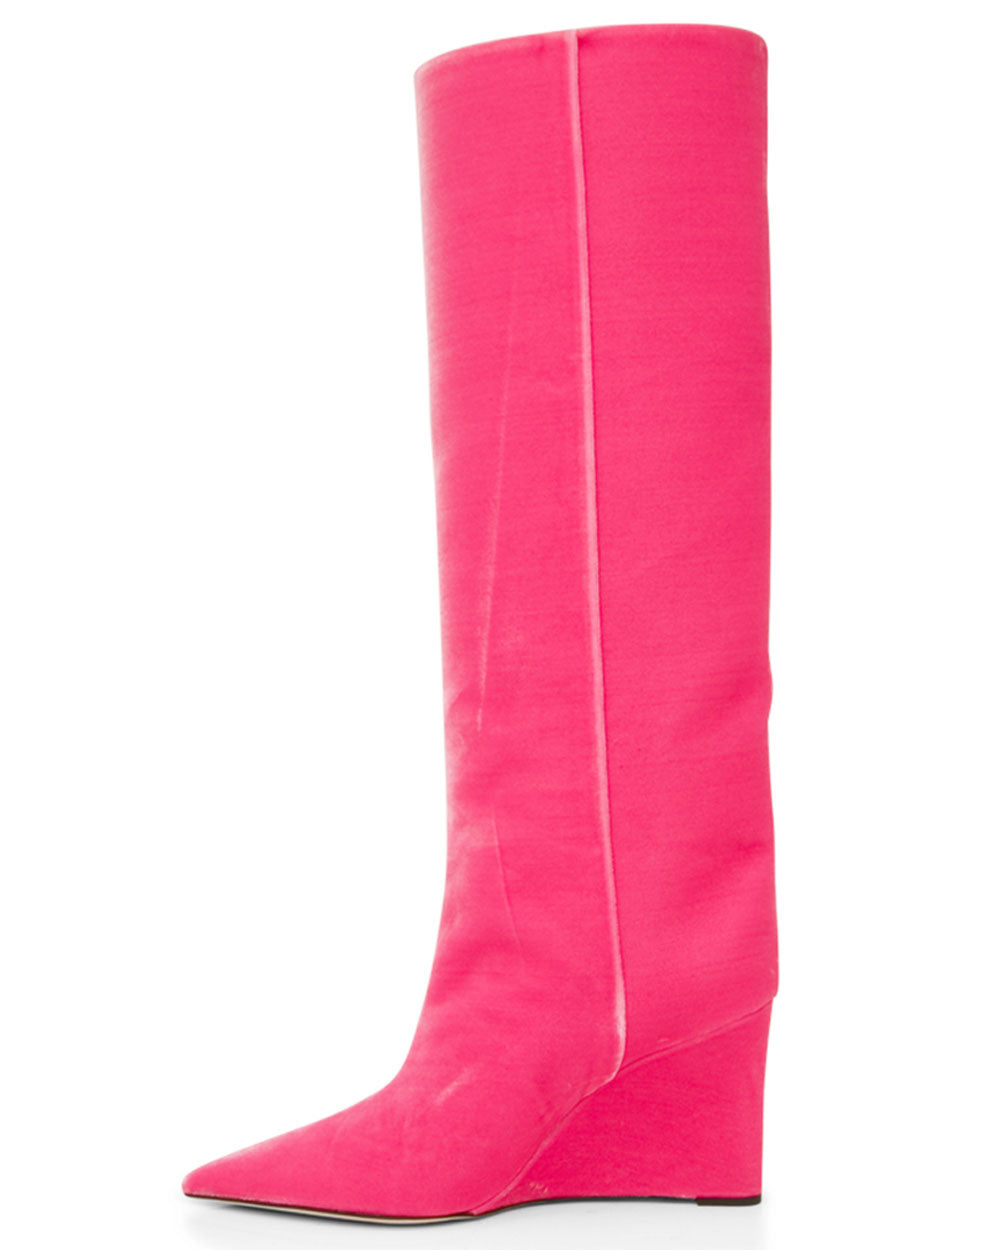 Blake Velvet Boot in Pink